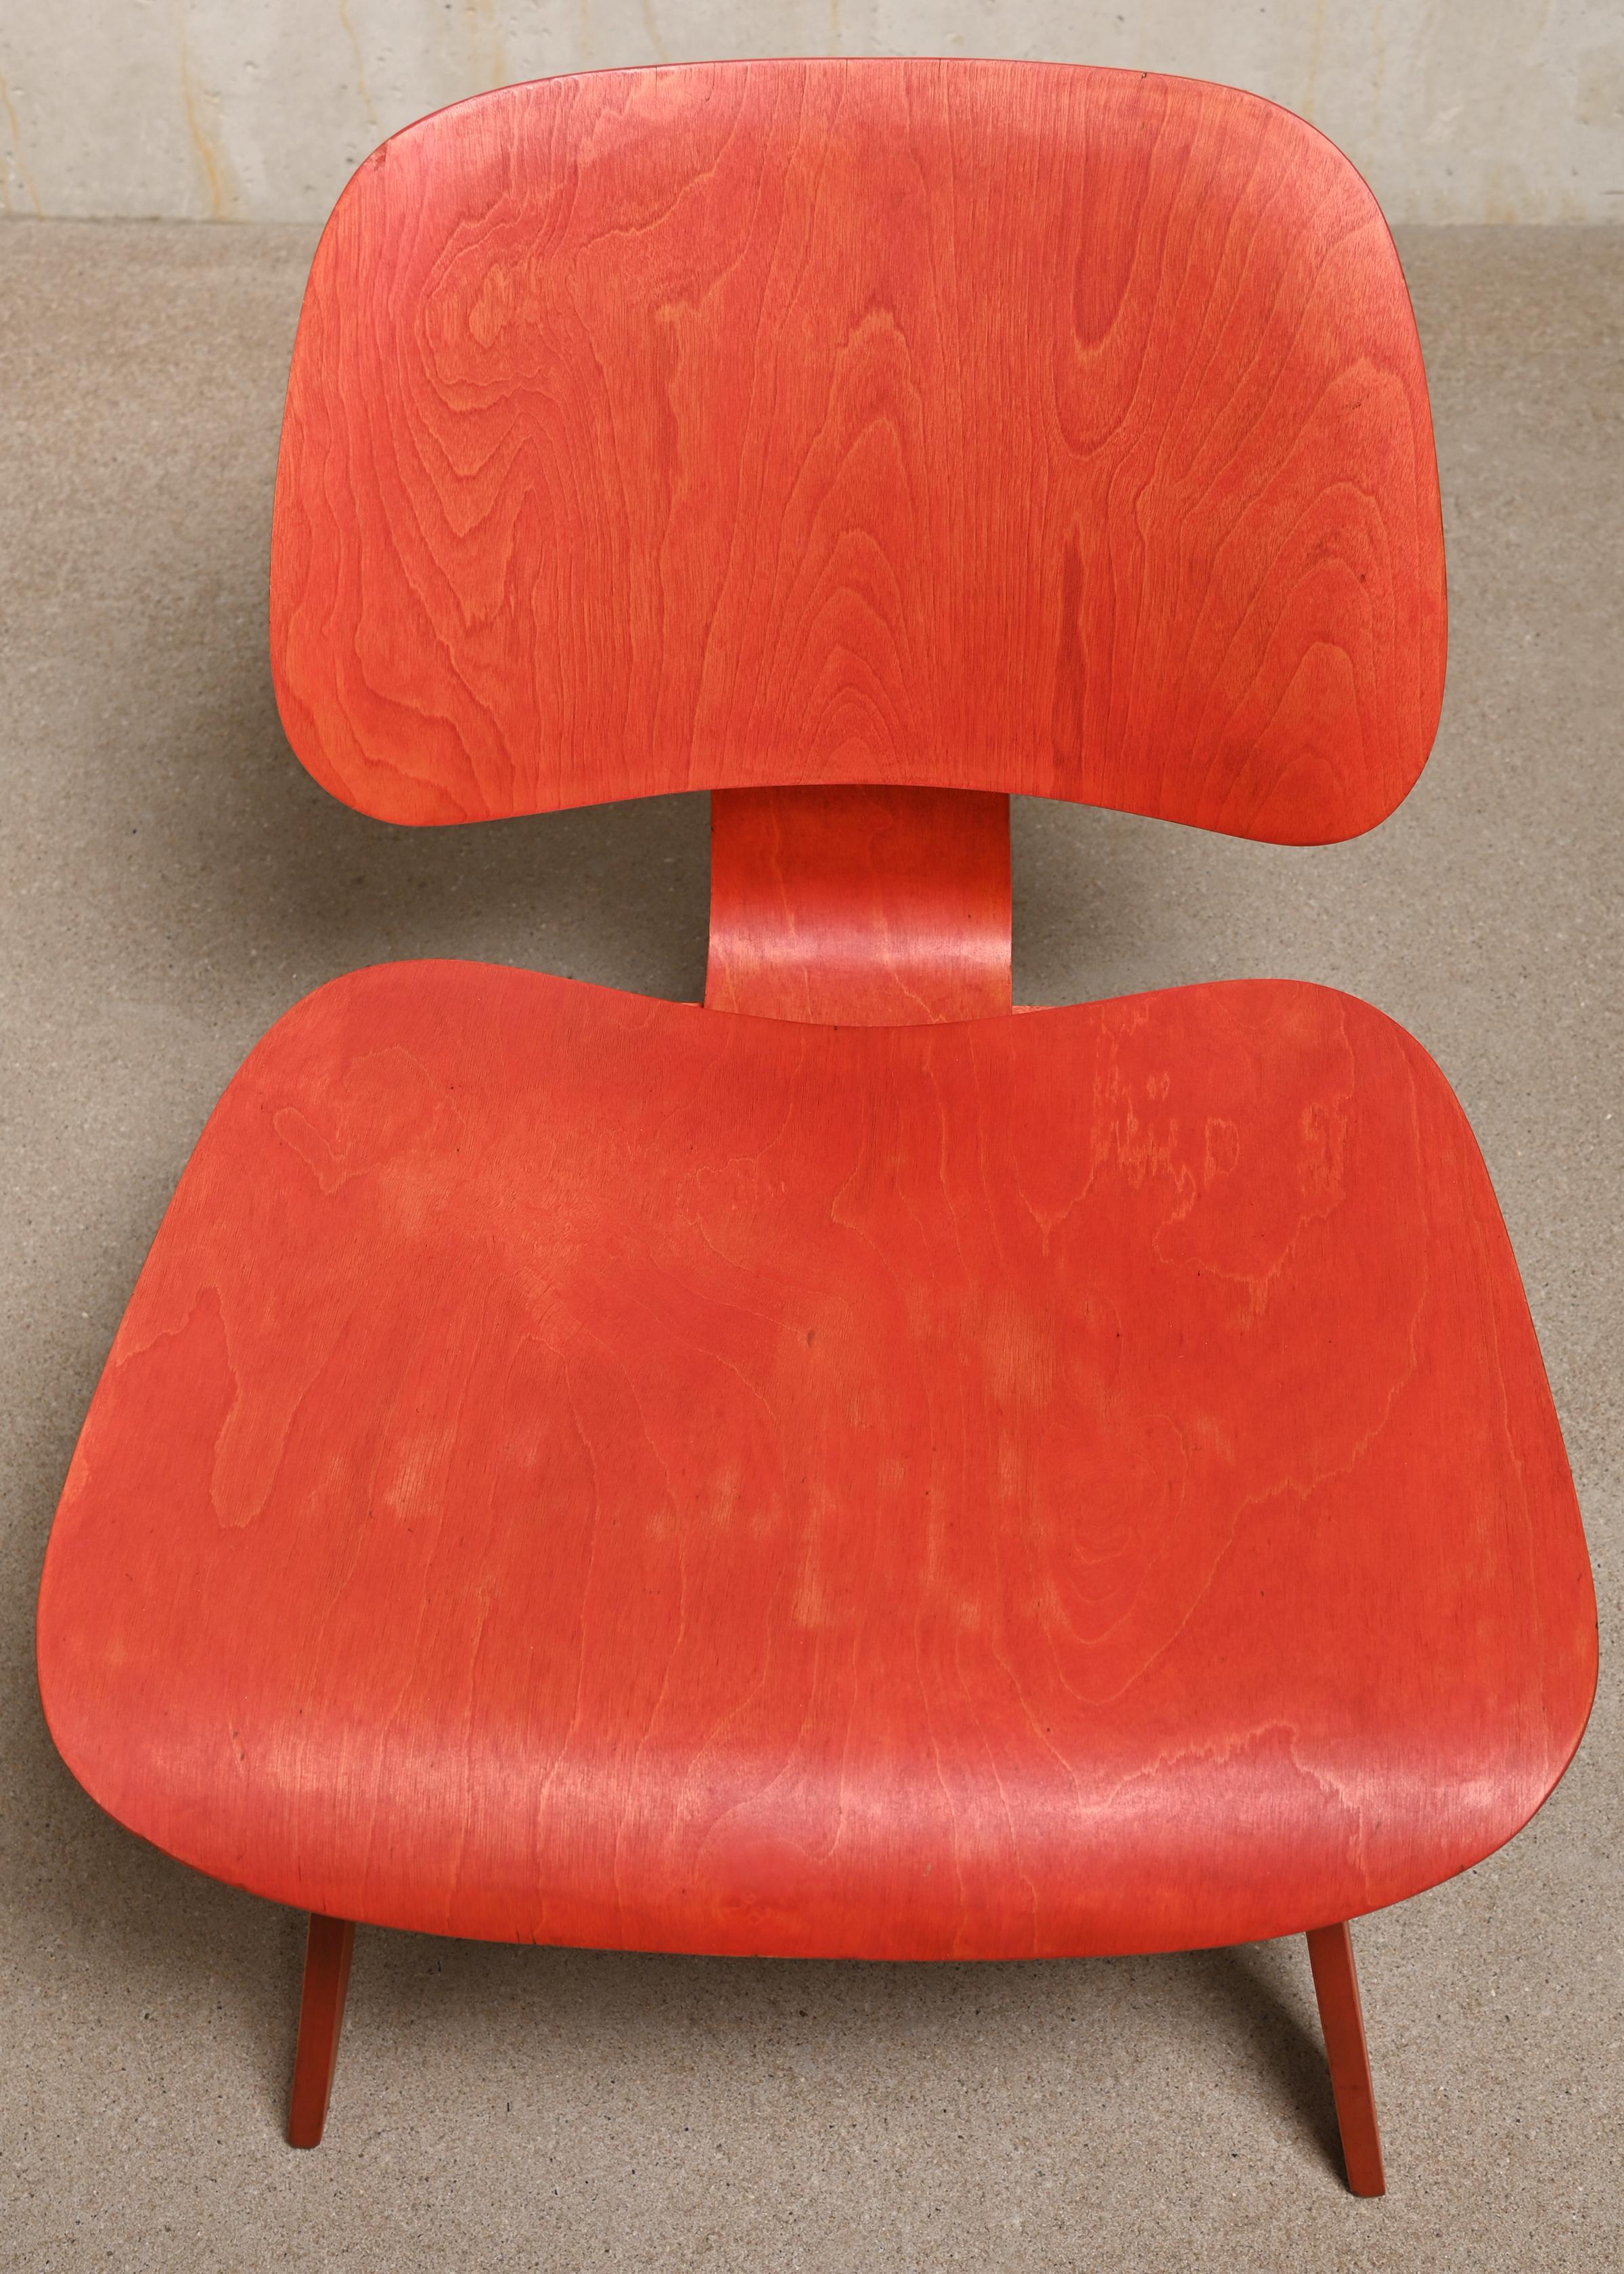 Charles & Ray Eames fauteuil de salon vintage LCW rouge en aniline pour Herman Miller 1